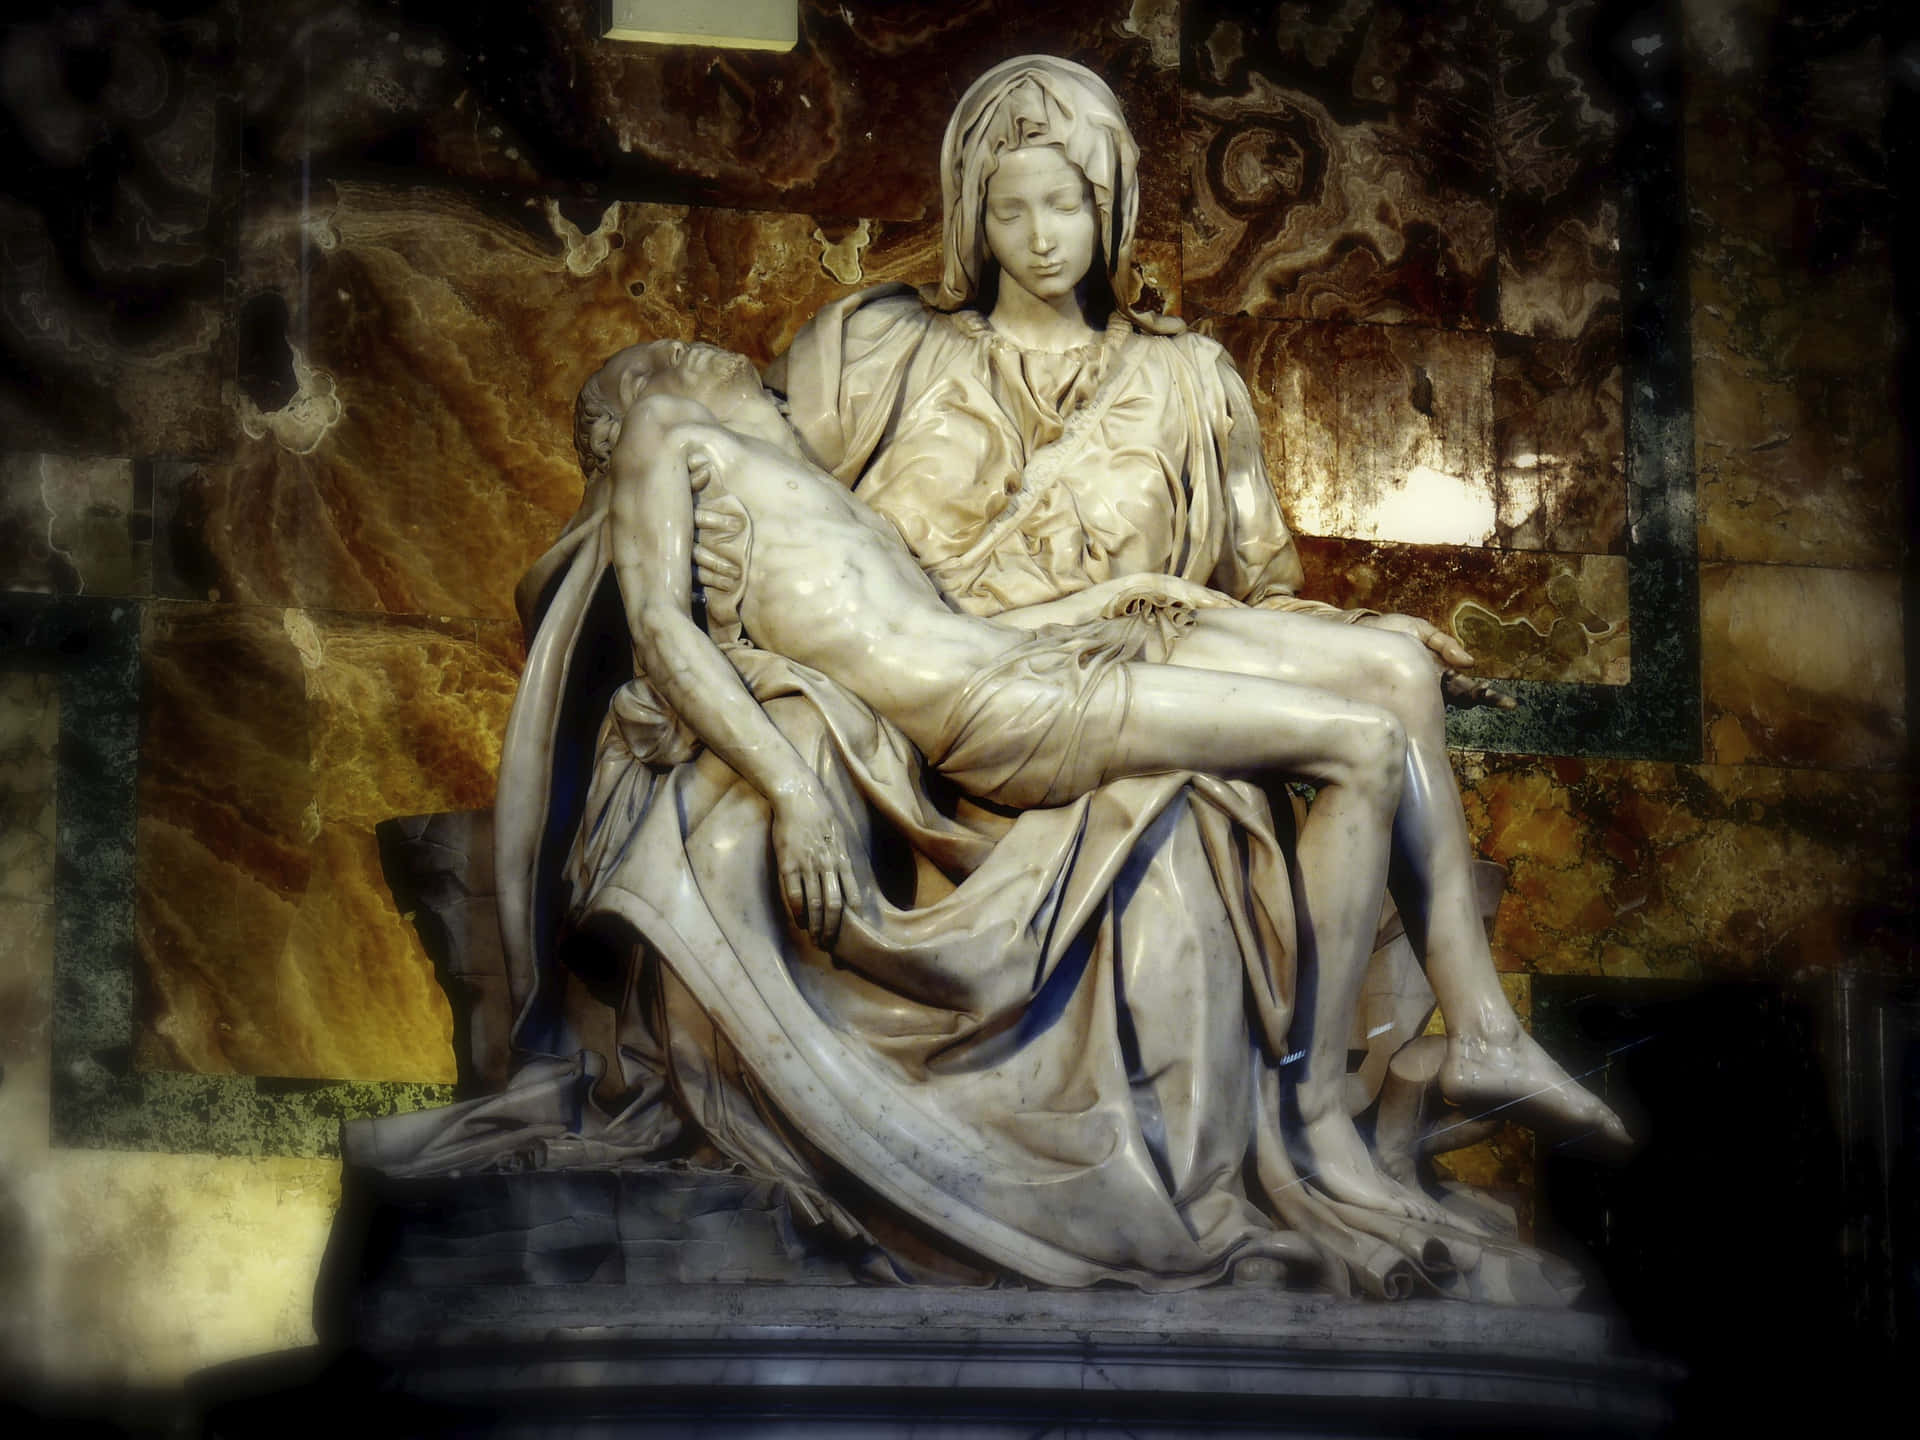 Derpietà Von Michelangelo In Der Vatikanstadt Wallpaper